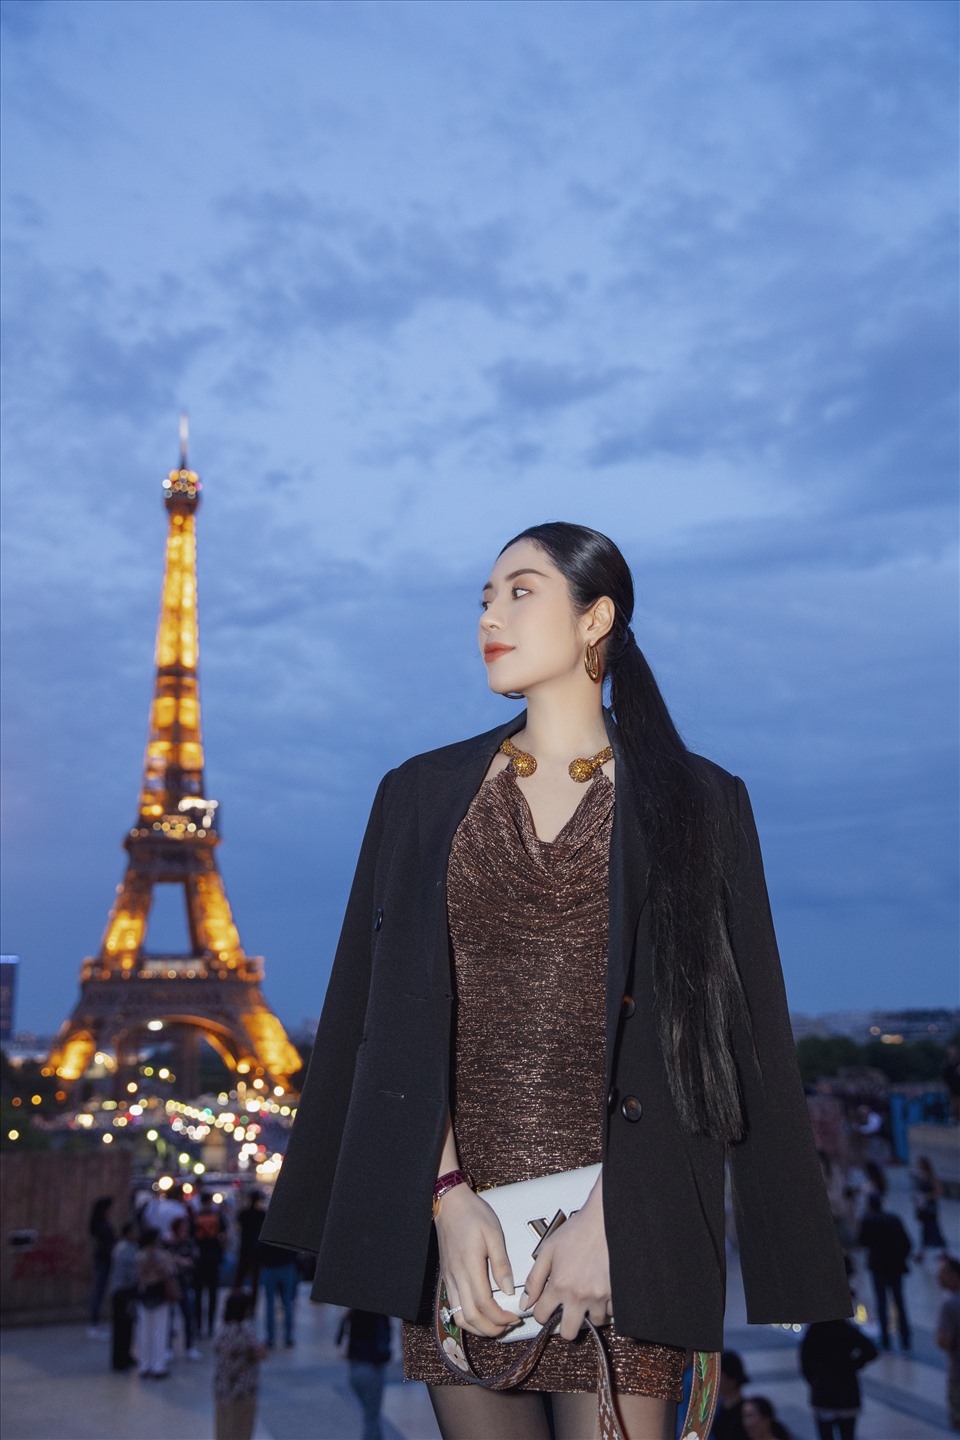 Tô Diệp Hà chia sẻ đây là chuyến xuất ngoại đầu tiên sau 2 năm gián đoạn vì COVID-19. Cô dạo tháp Eiffel ngay thời điểm cuối tuần khá đông du khách tham quan.